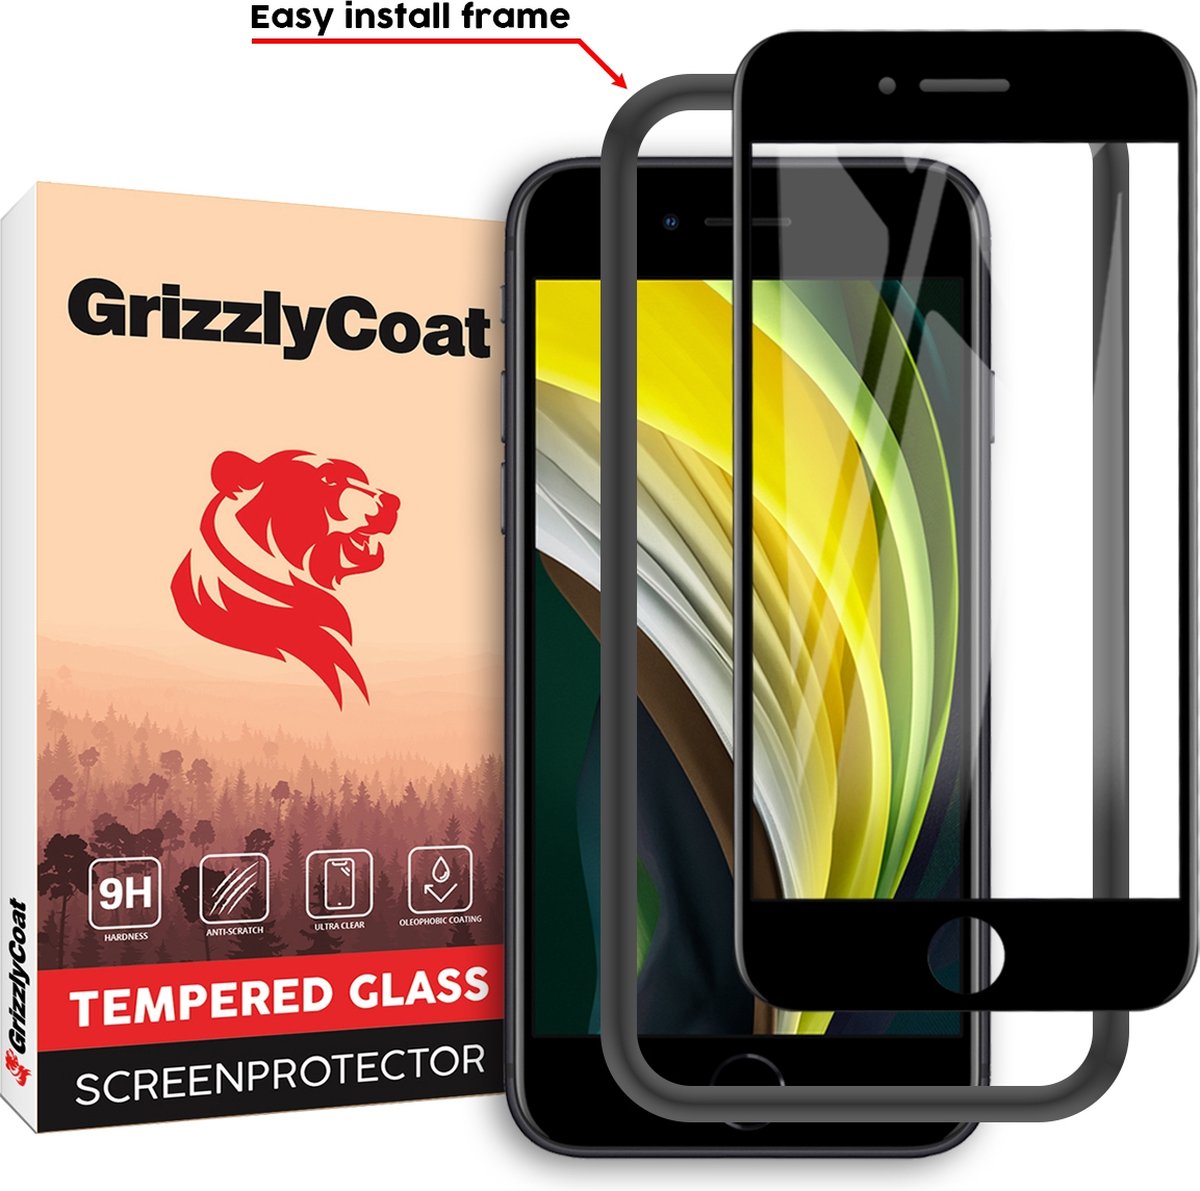 GrizzlyCoat Easy Fit Screenprotector geschikt voor Apple iPhone 6 Glazen Screenprotector - Case Friendly + Installatie Frame - Zwart